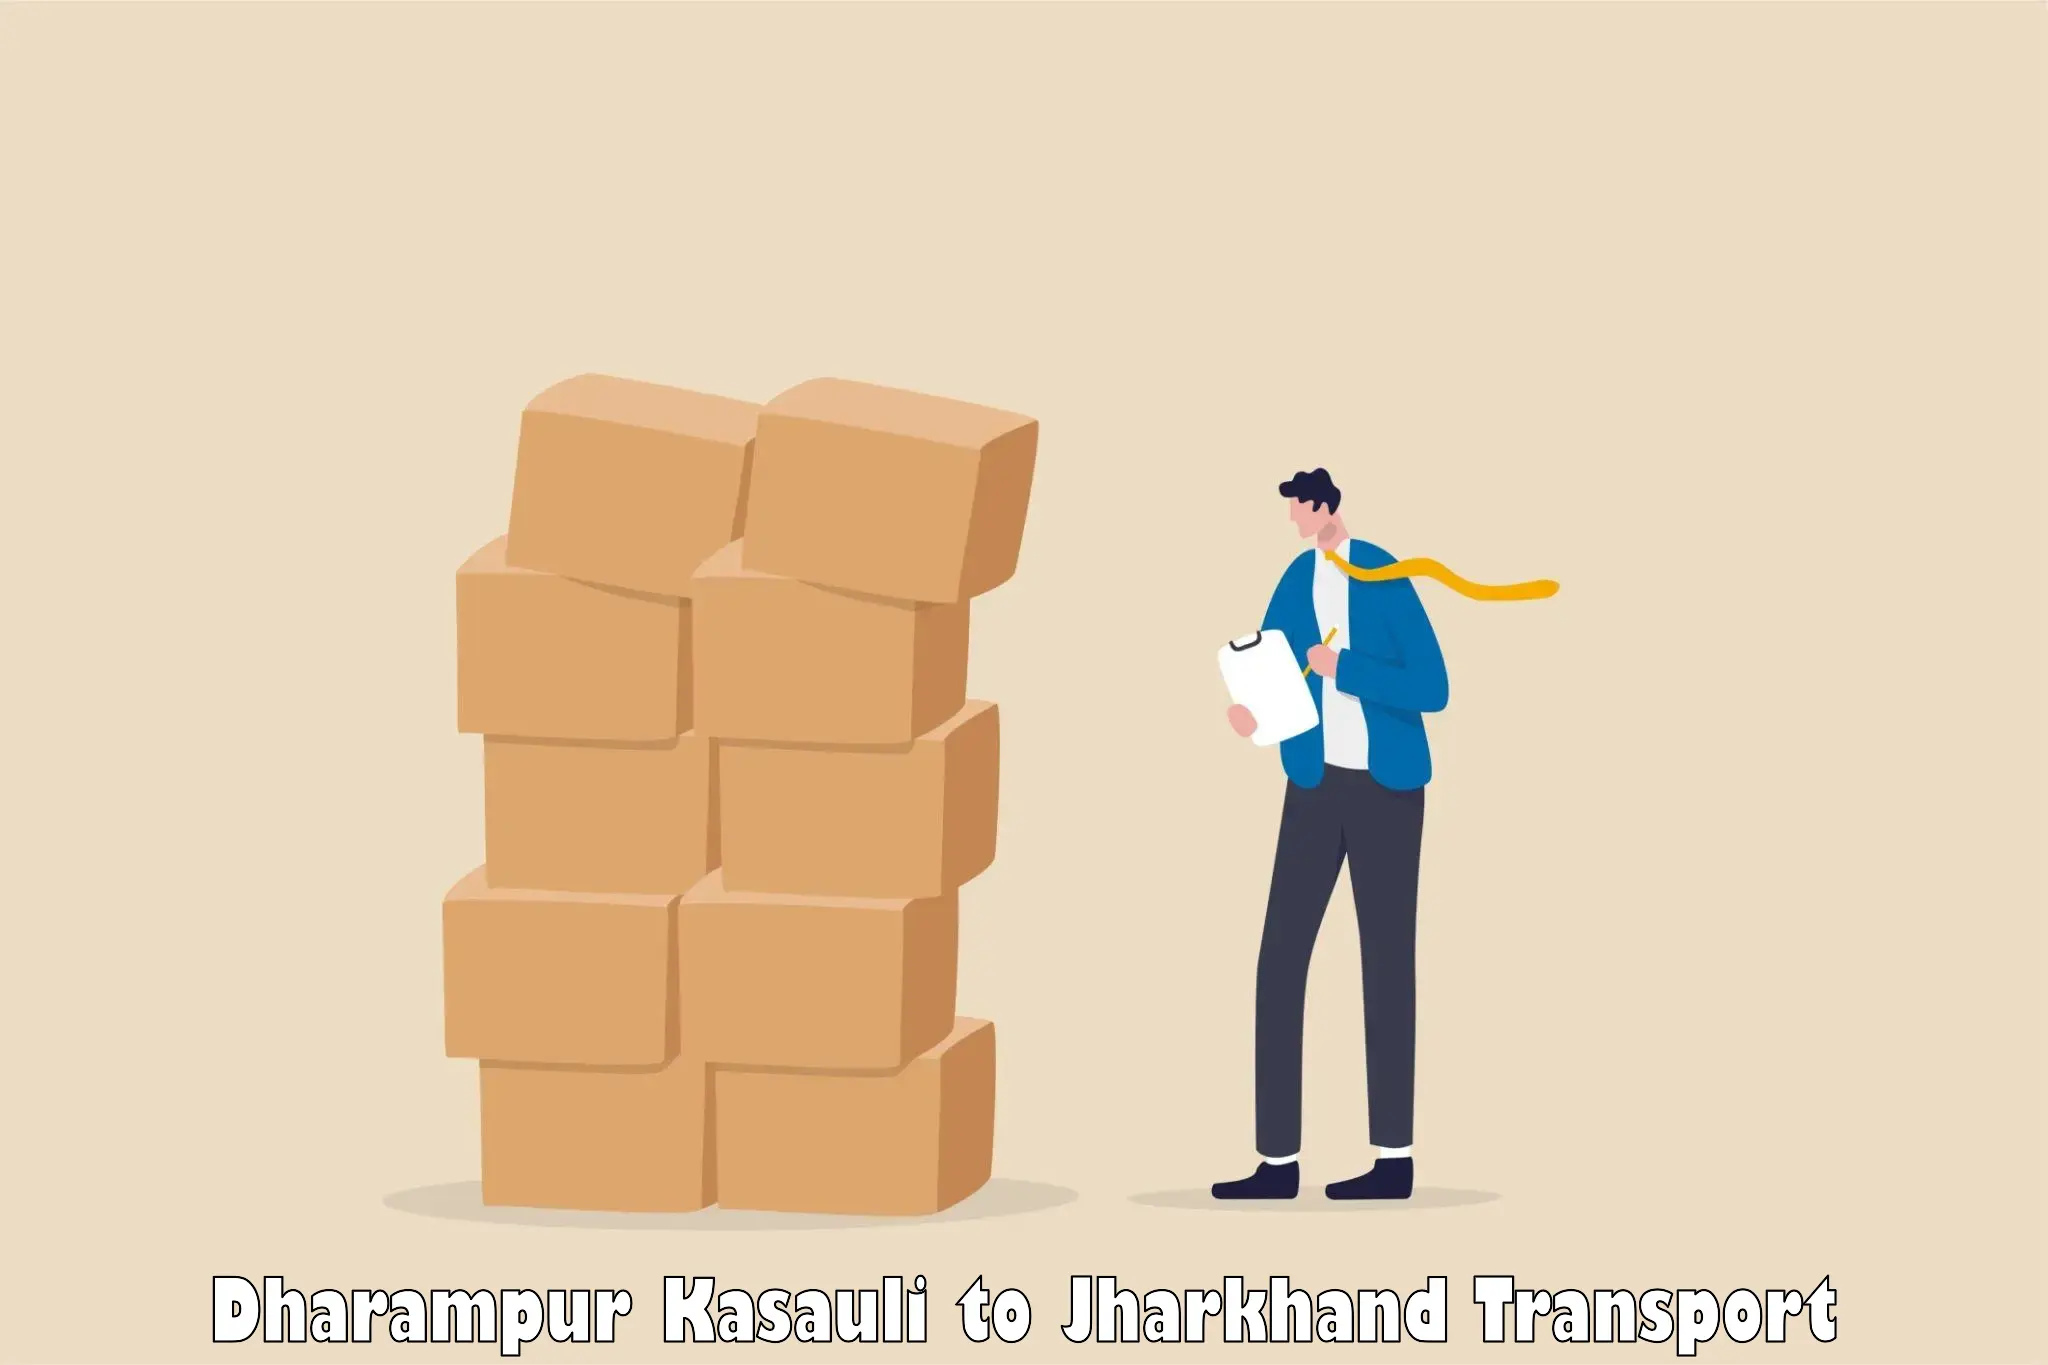 Transport in sharing Dharampur Kasauli to Adityapur